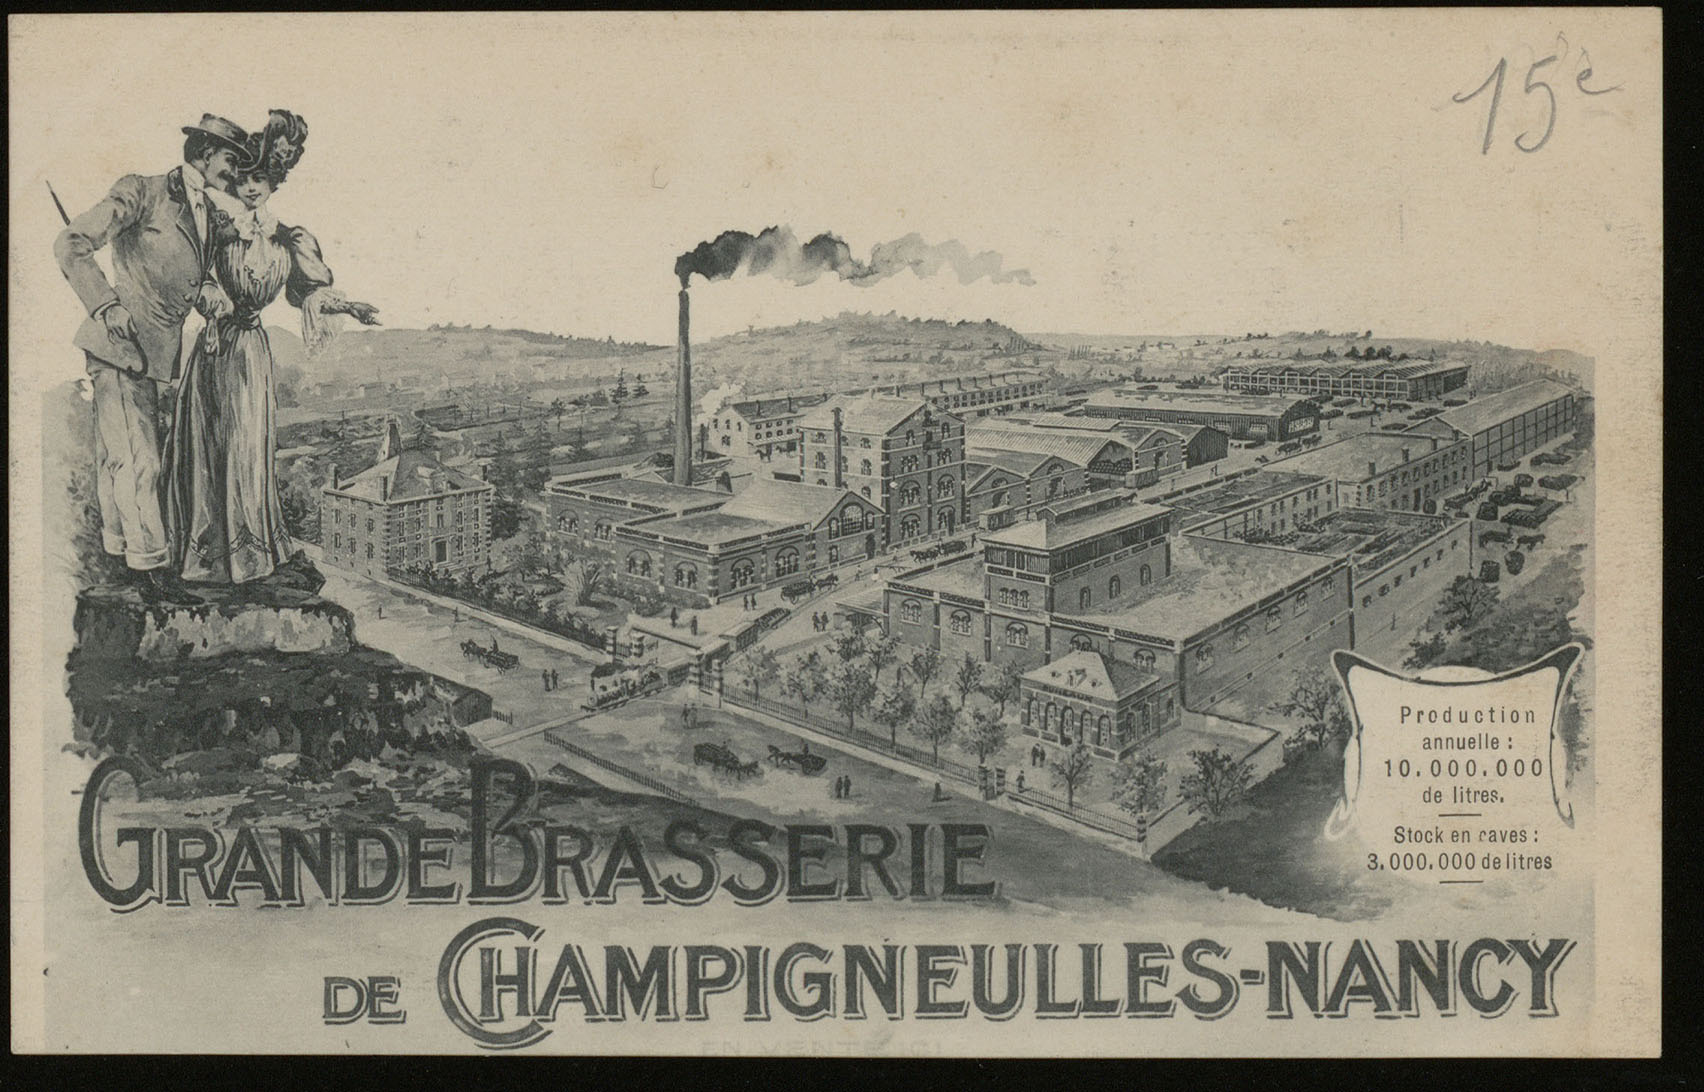 Contenu du Grande Brasserie de Champigneulles-Nancy